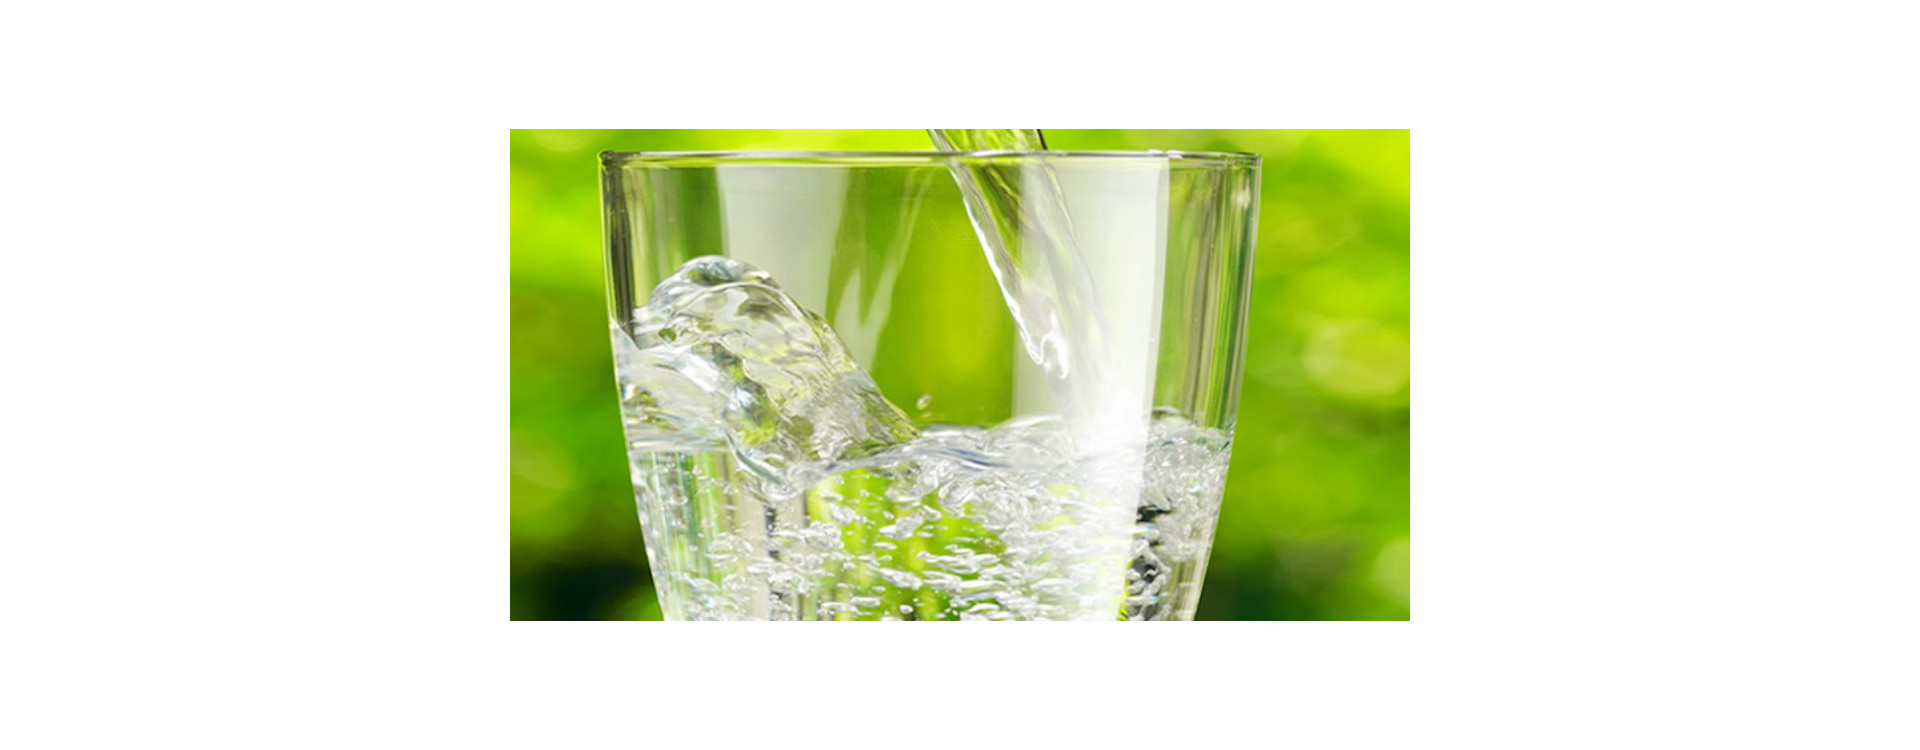 Zdrowie w szklance wody